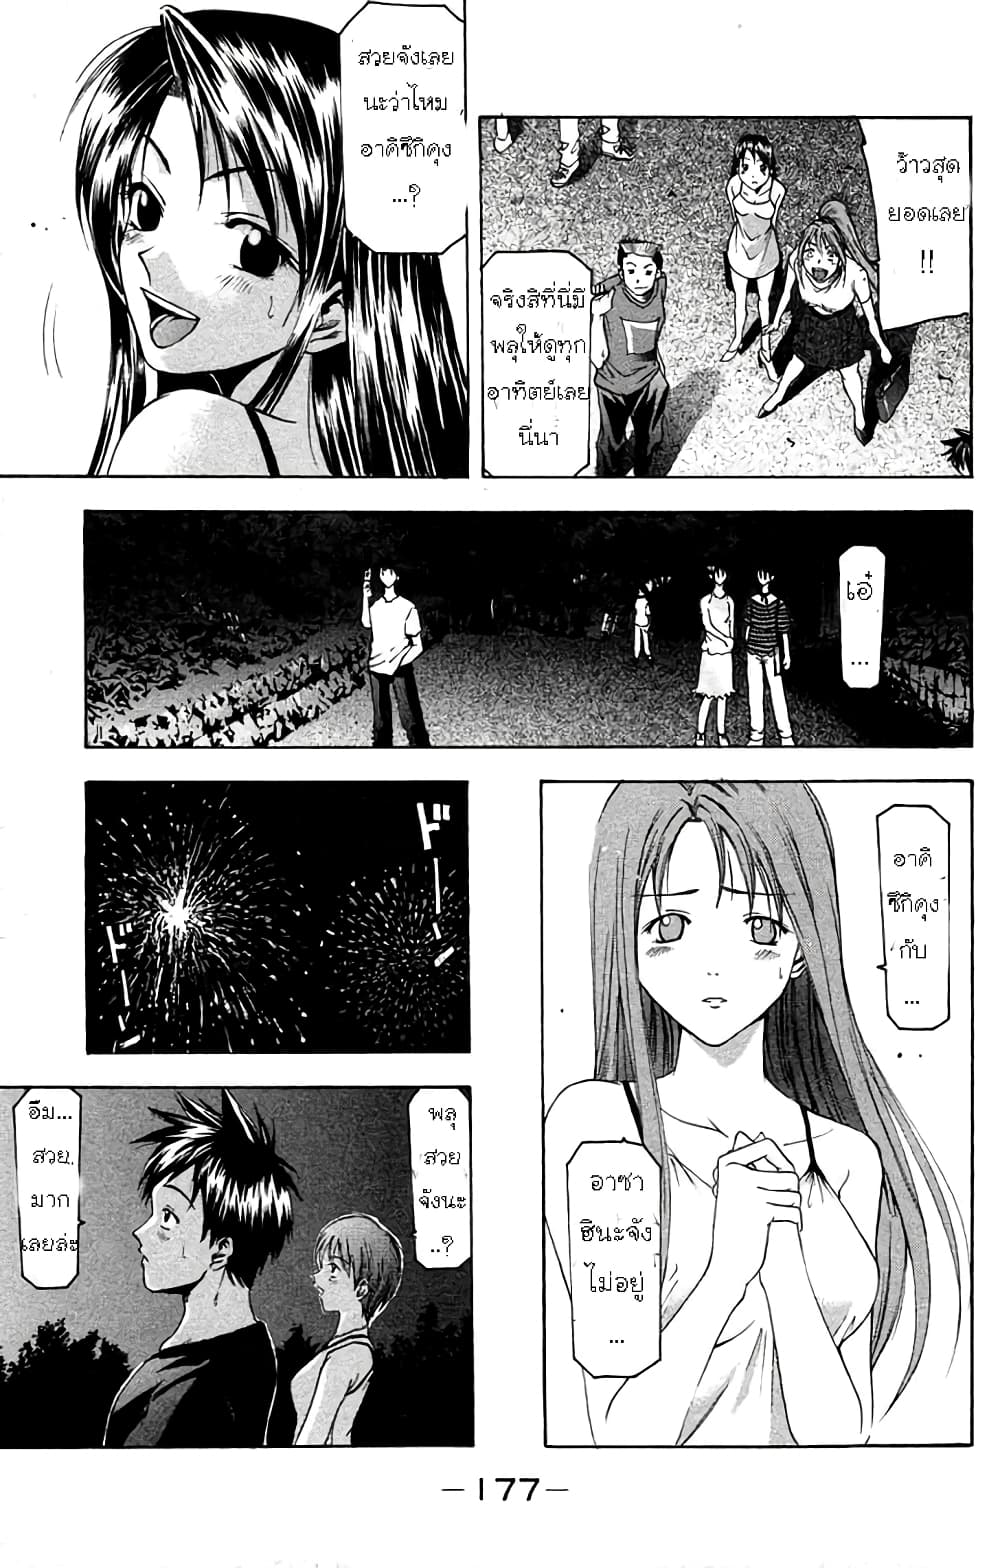 Suzuka 31-Fireworks